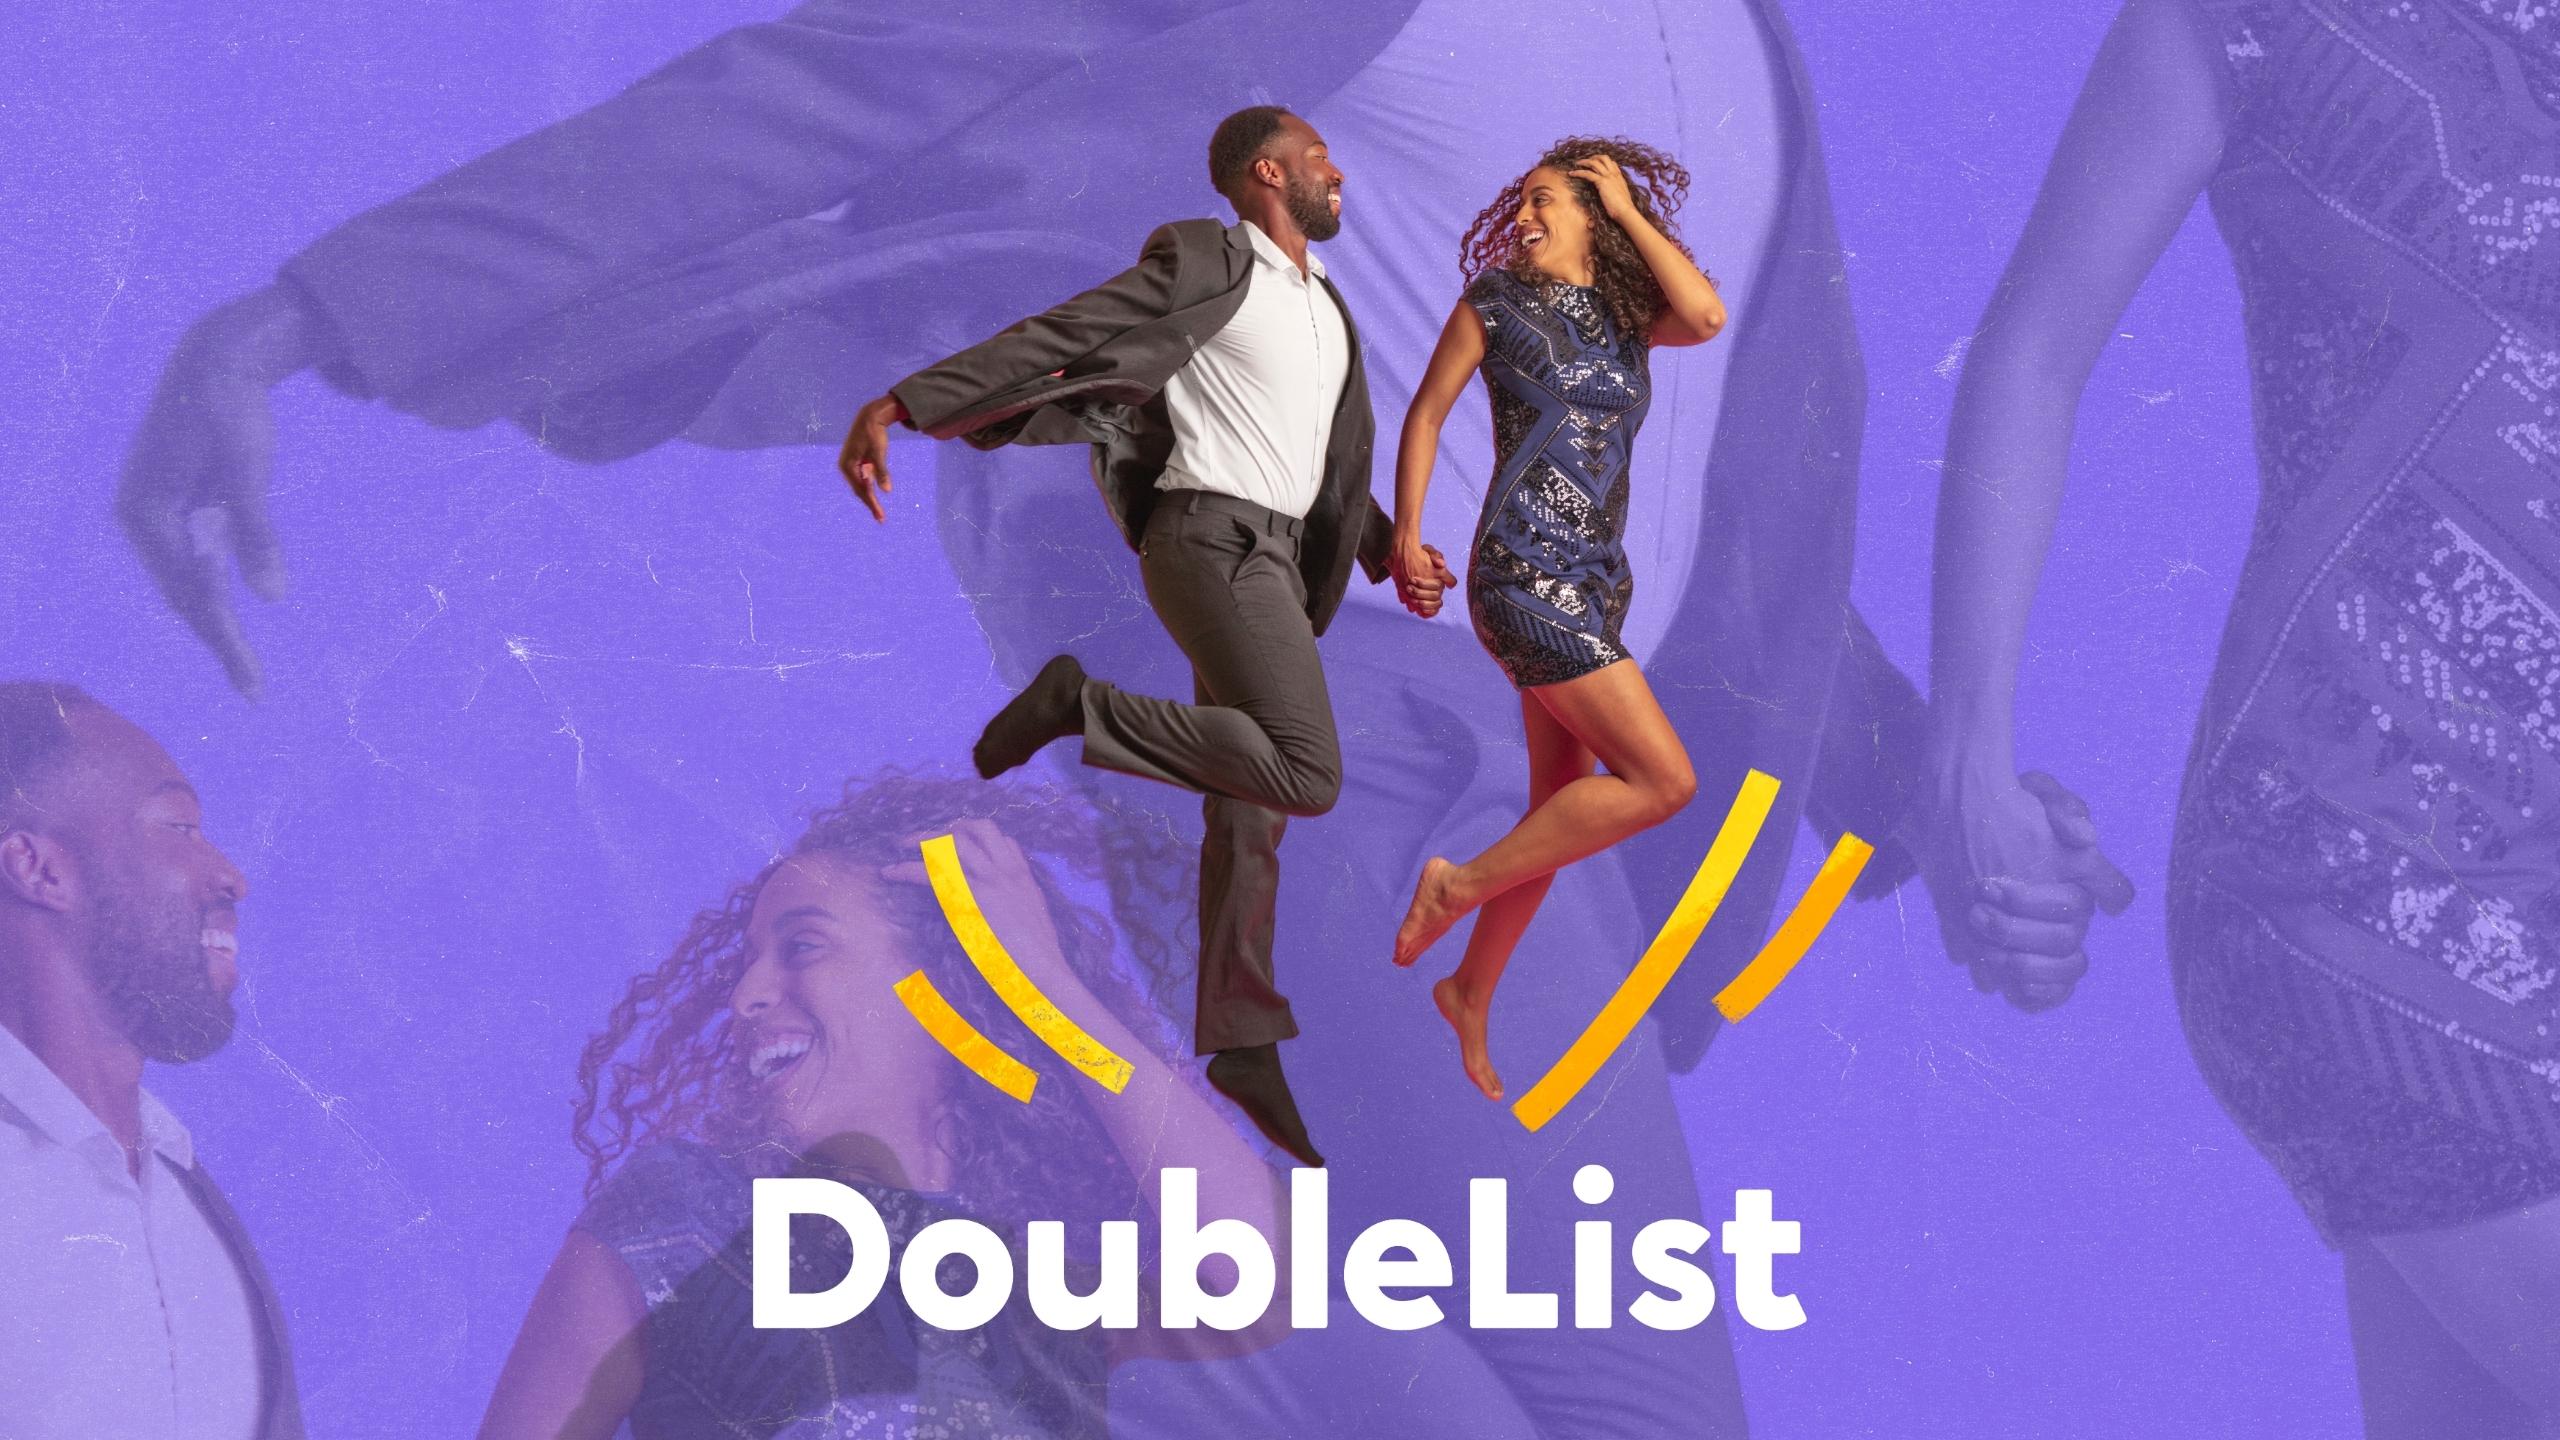 10. Doublelist - Dance